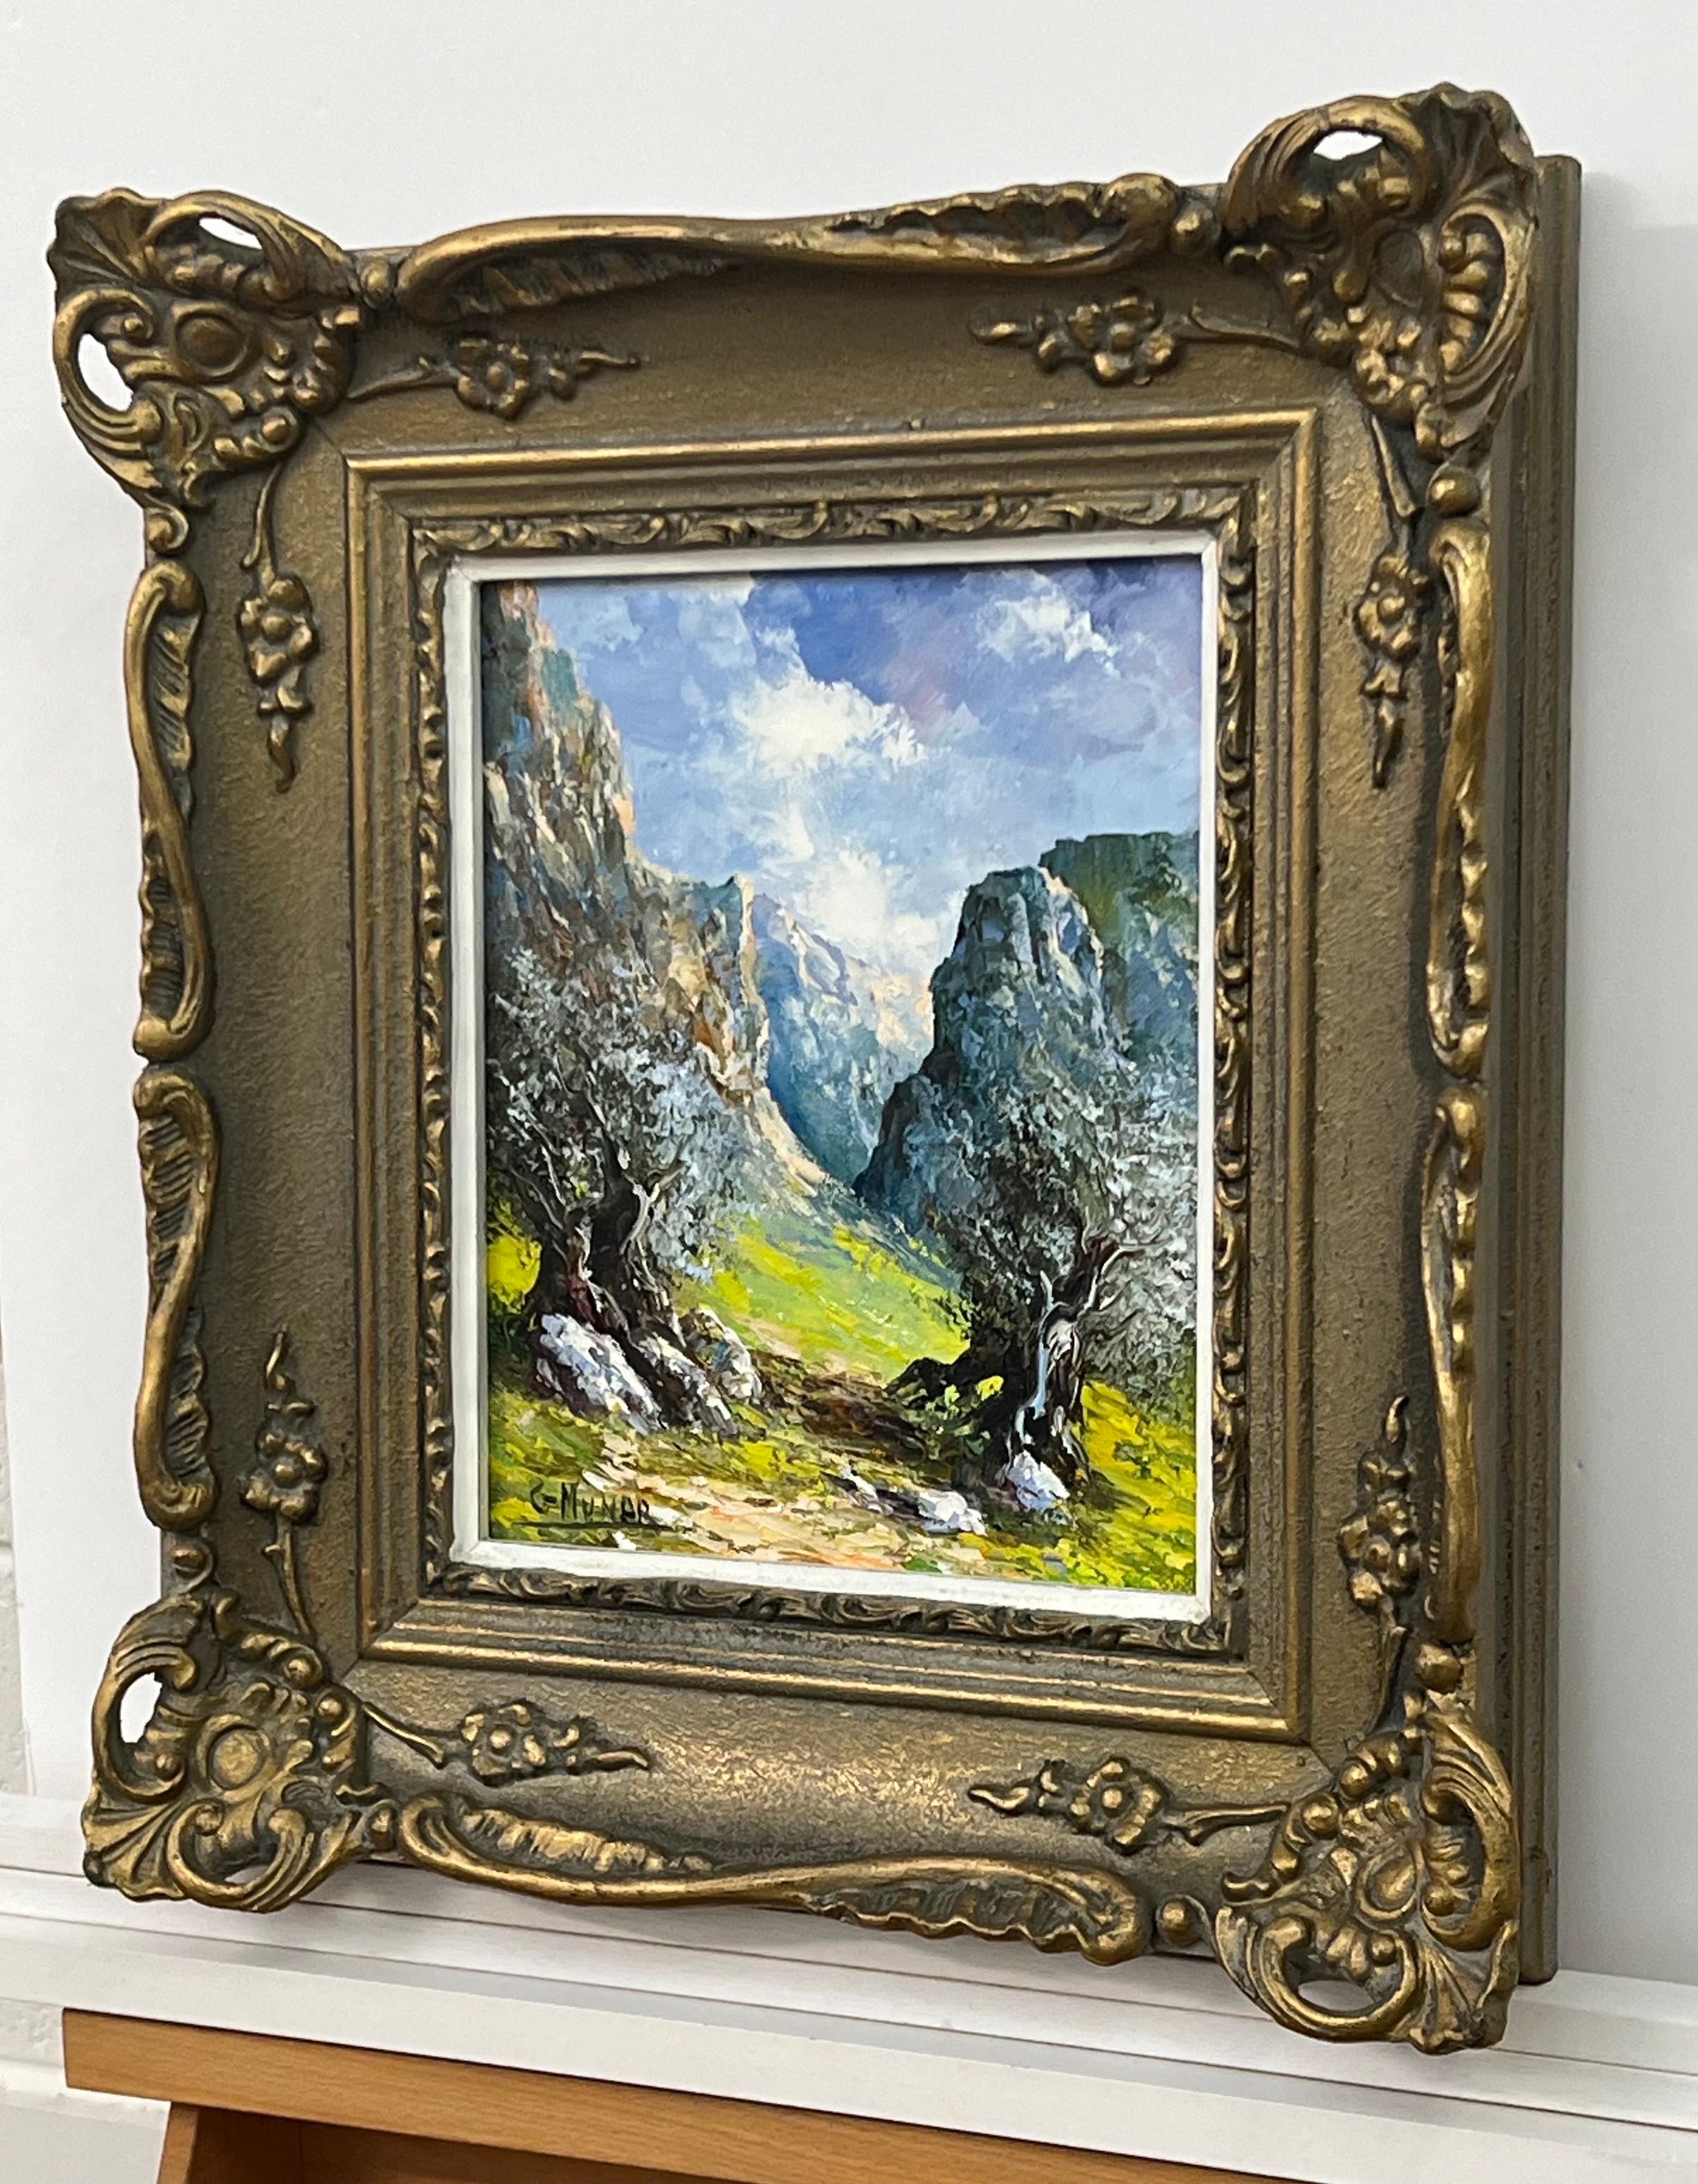 Berge in Spanien, farbenfrohes Original-Öl von G Munar, einem Künstler der spanischen Schule des 20. 

Kunst misst 11 x 9 Zoll 
Rahmen misst 17 x 15 Zoll 

Präsentiert in einem verzierten Rahmen aus der Zeit 
